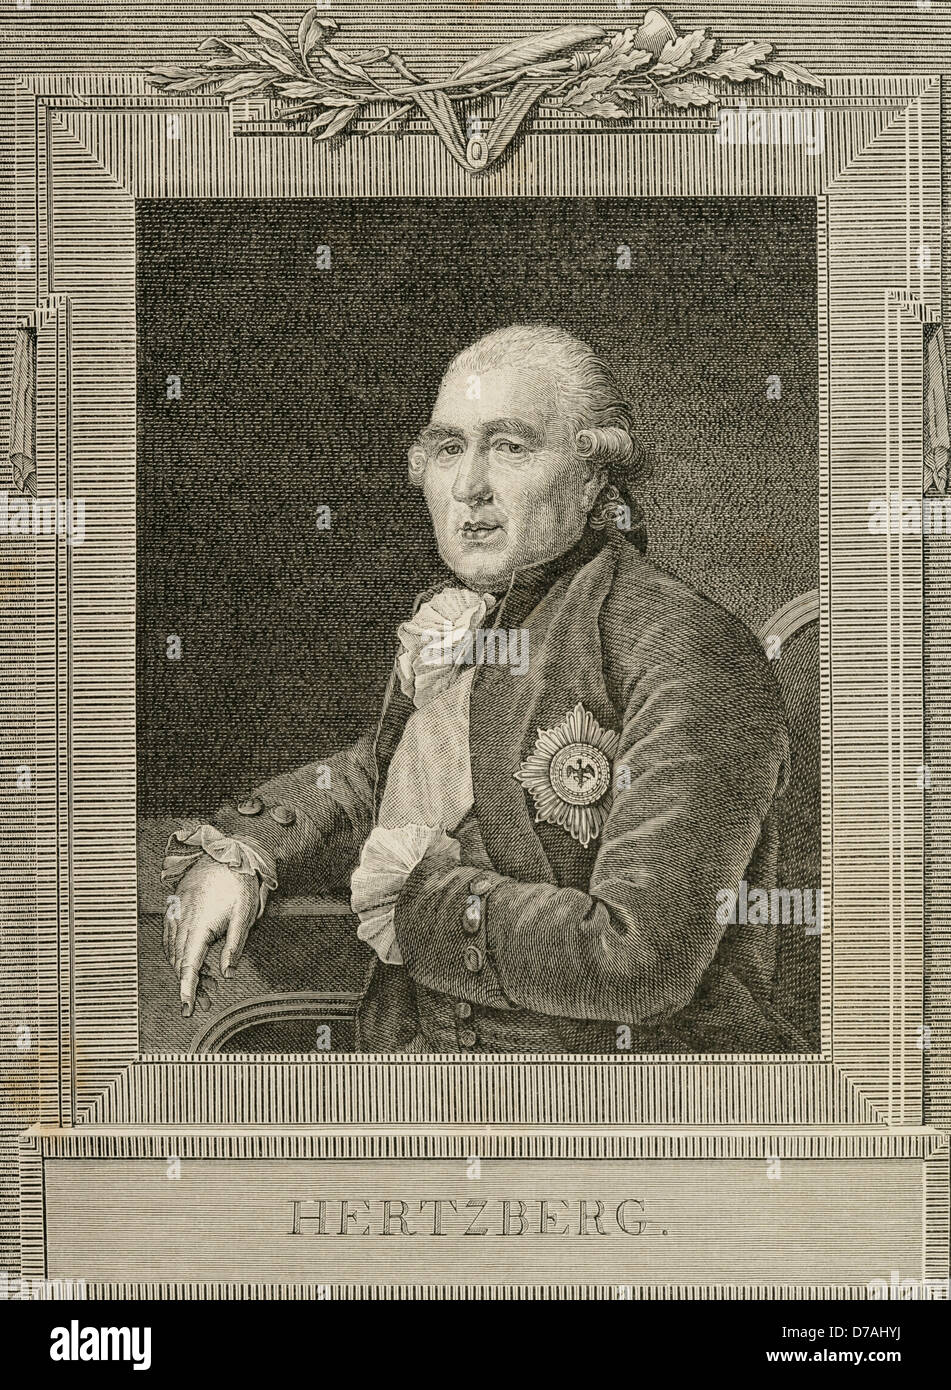 Ewald Friedrich von Hertzberg (1725-1795). Preußischer Politiker und Staatsmann. Gravur in die Universalgeschichte, 1885. Stockfoto